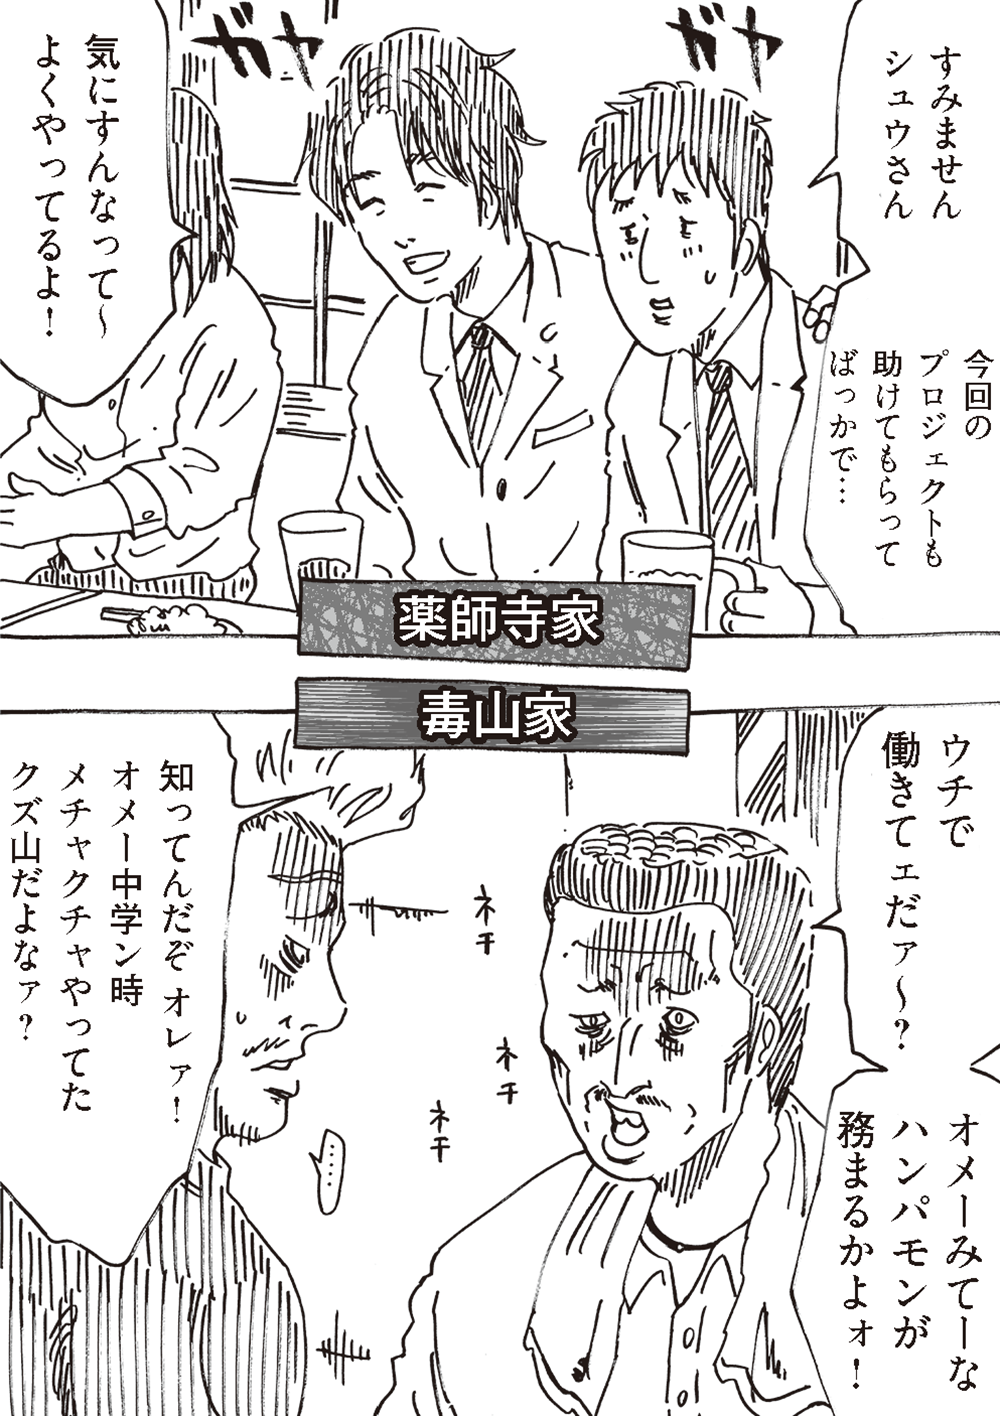 え、不倫？「飲み直しませんか」職場の若い女性に誘われた夫の「表情」／どちらかの家庭が崩壊する漫画 oomisoka_houkai_nyukou_014.png